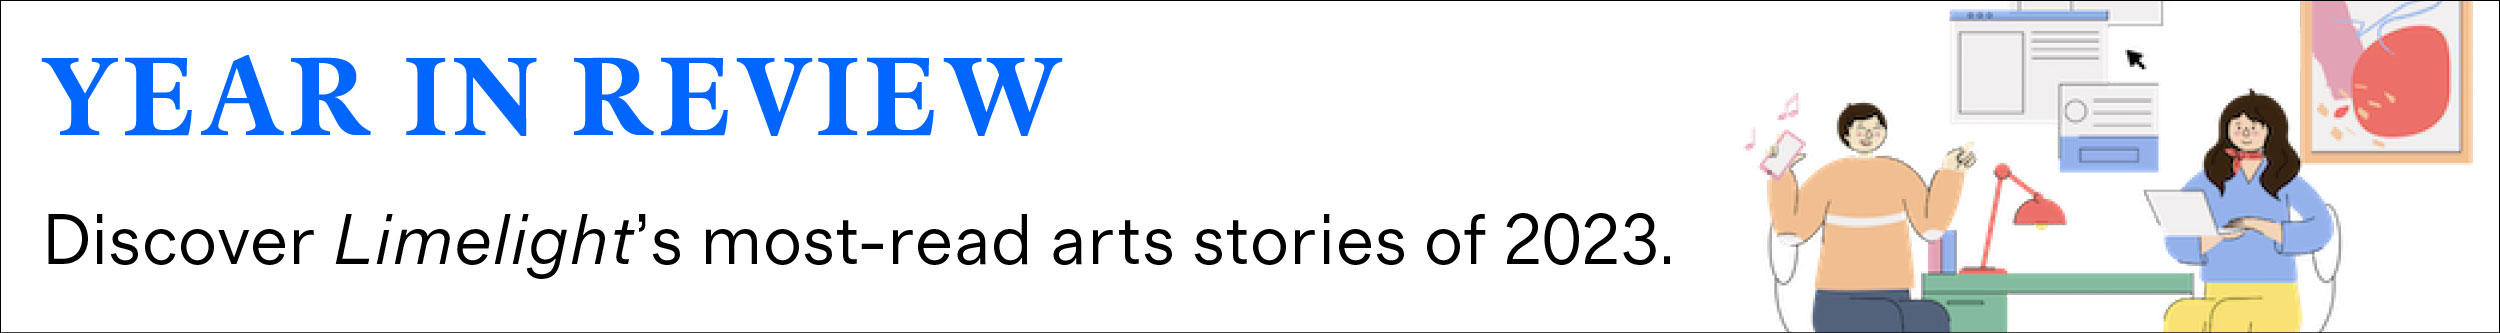 Fedezze fel a Limelight 2023 legolvasottabb művészeti történeteit.